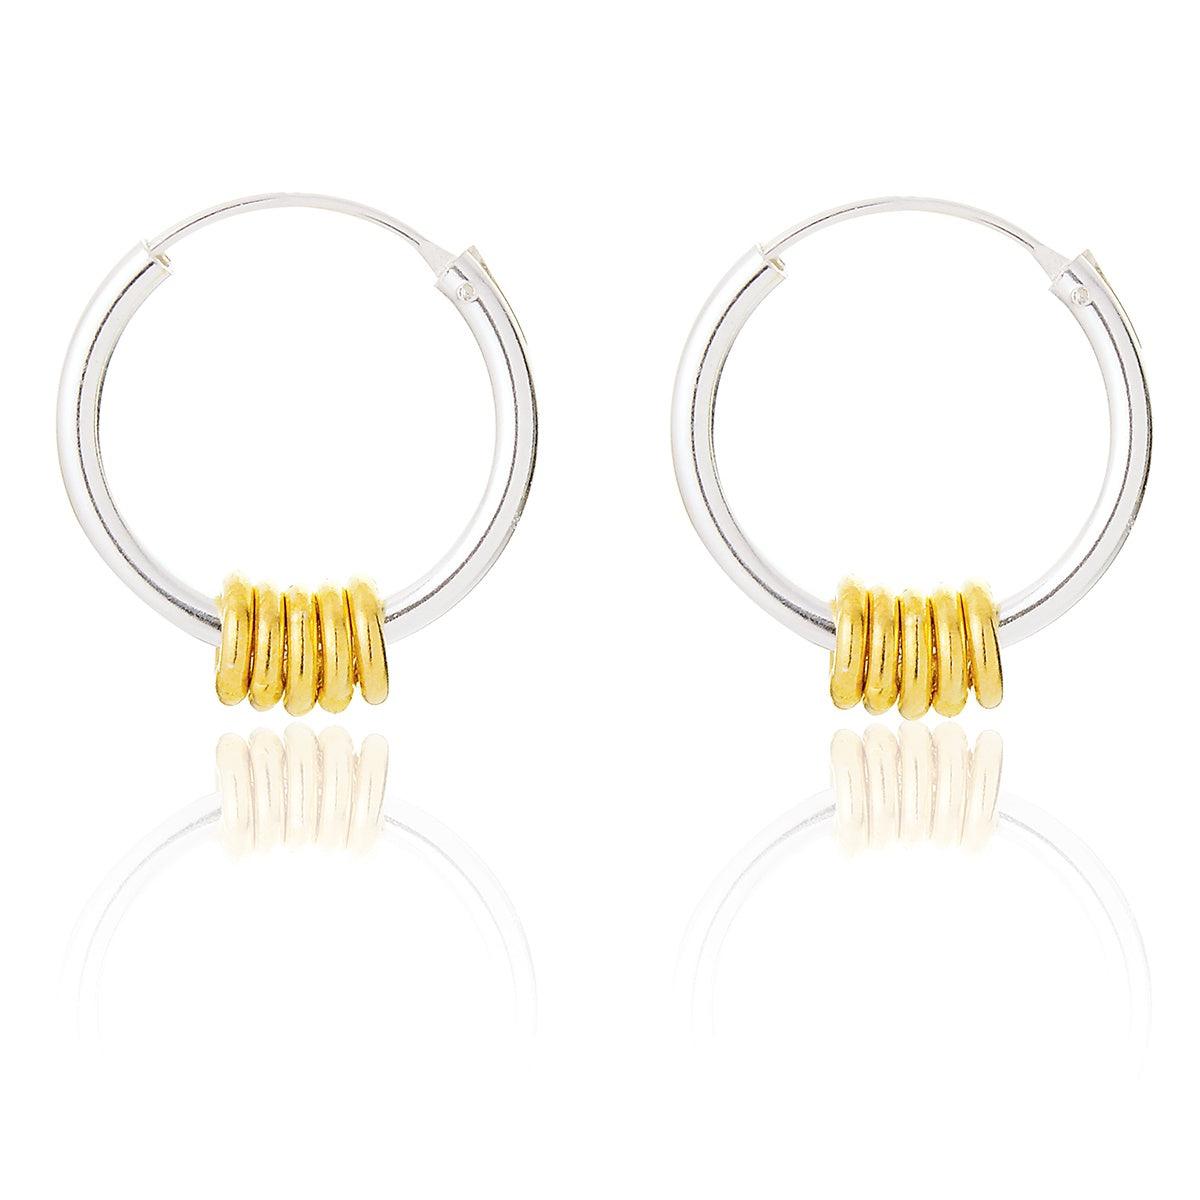 Sweetie Hoop Earrings - Gold - Pretty Shiny Shop